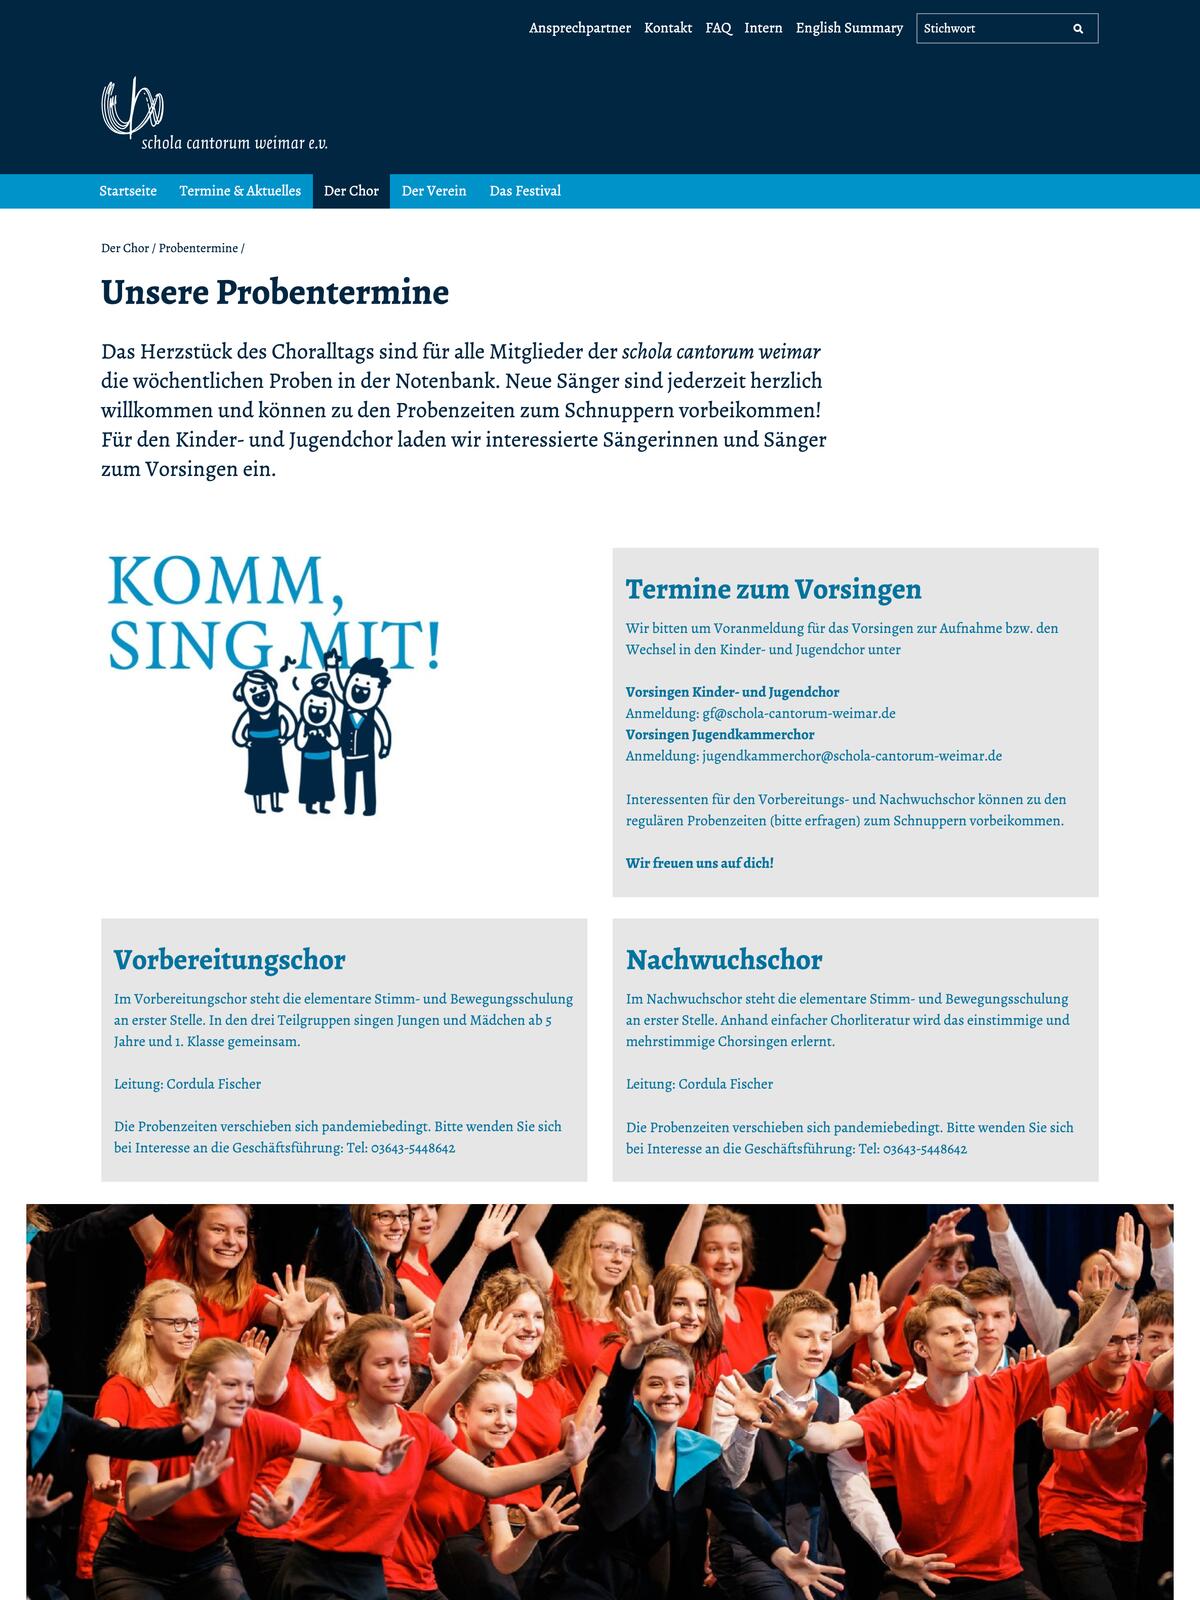 Website der Schola Cantorum Weimar: normale „statische Seite“ mit Probenterminen